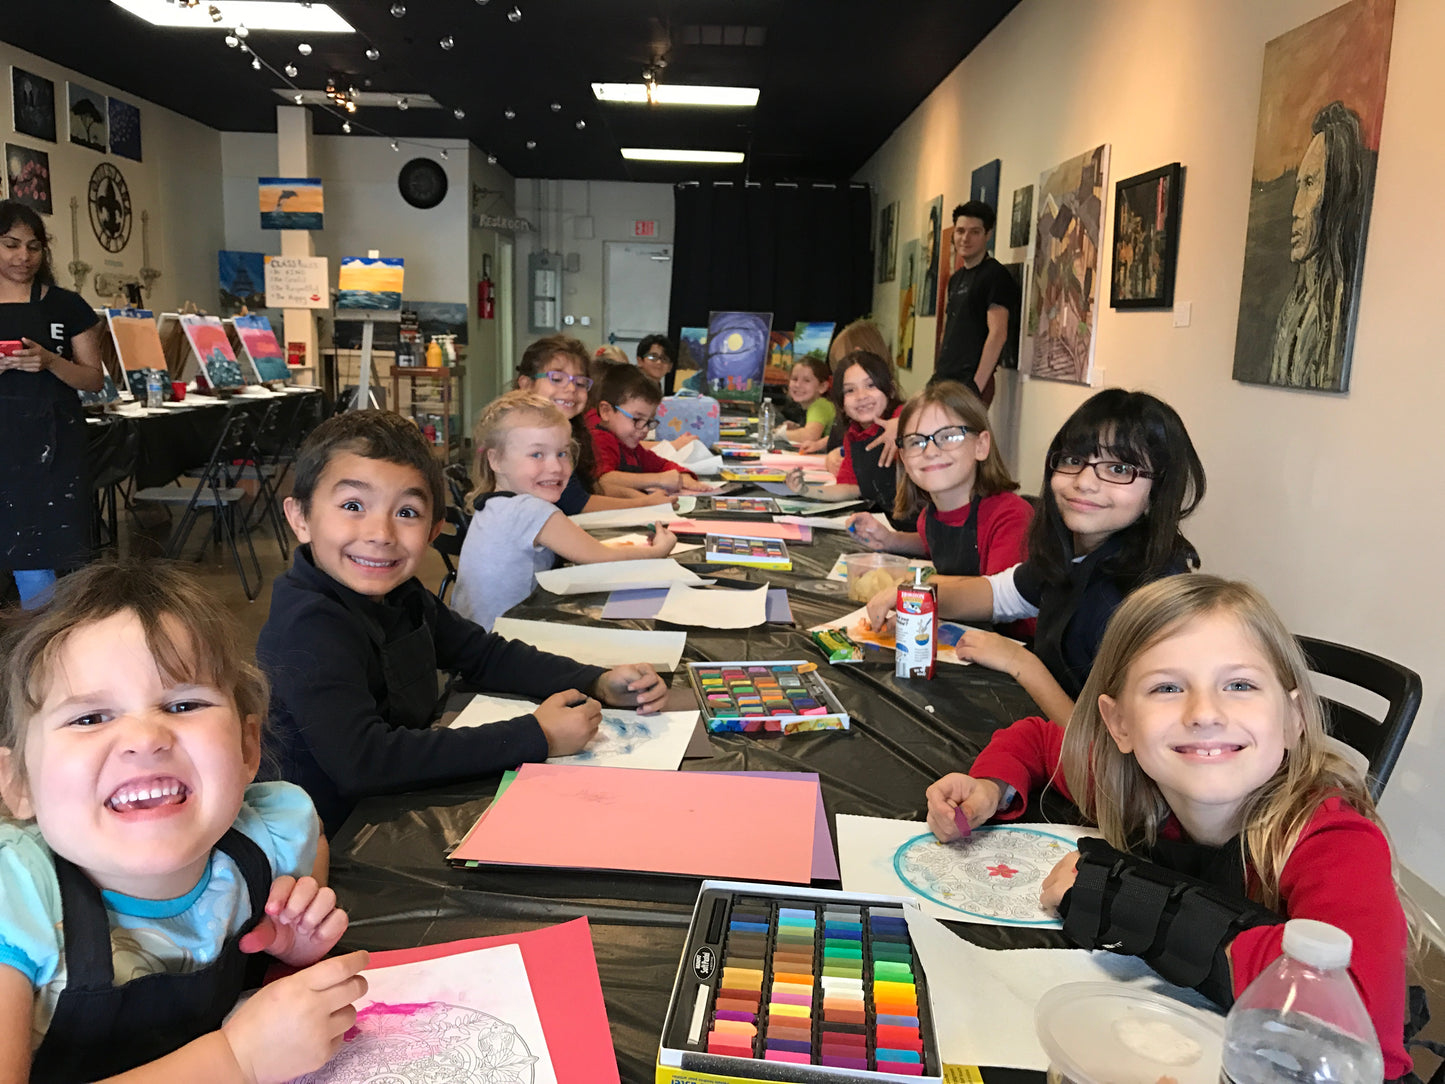 Wed, Dec 4, 4-6p "Paint on Plates” Public Houston Kids Painting Class